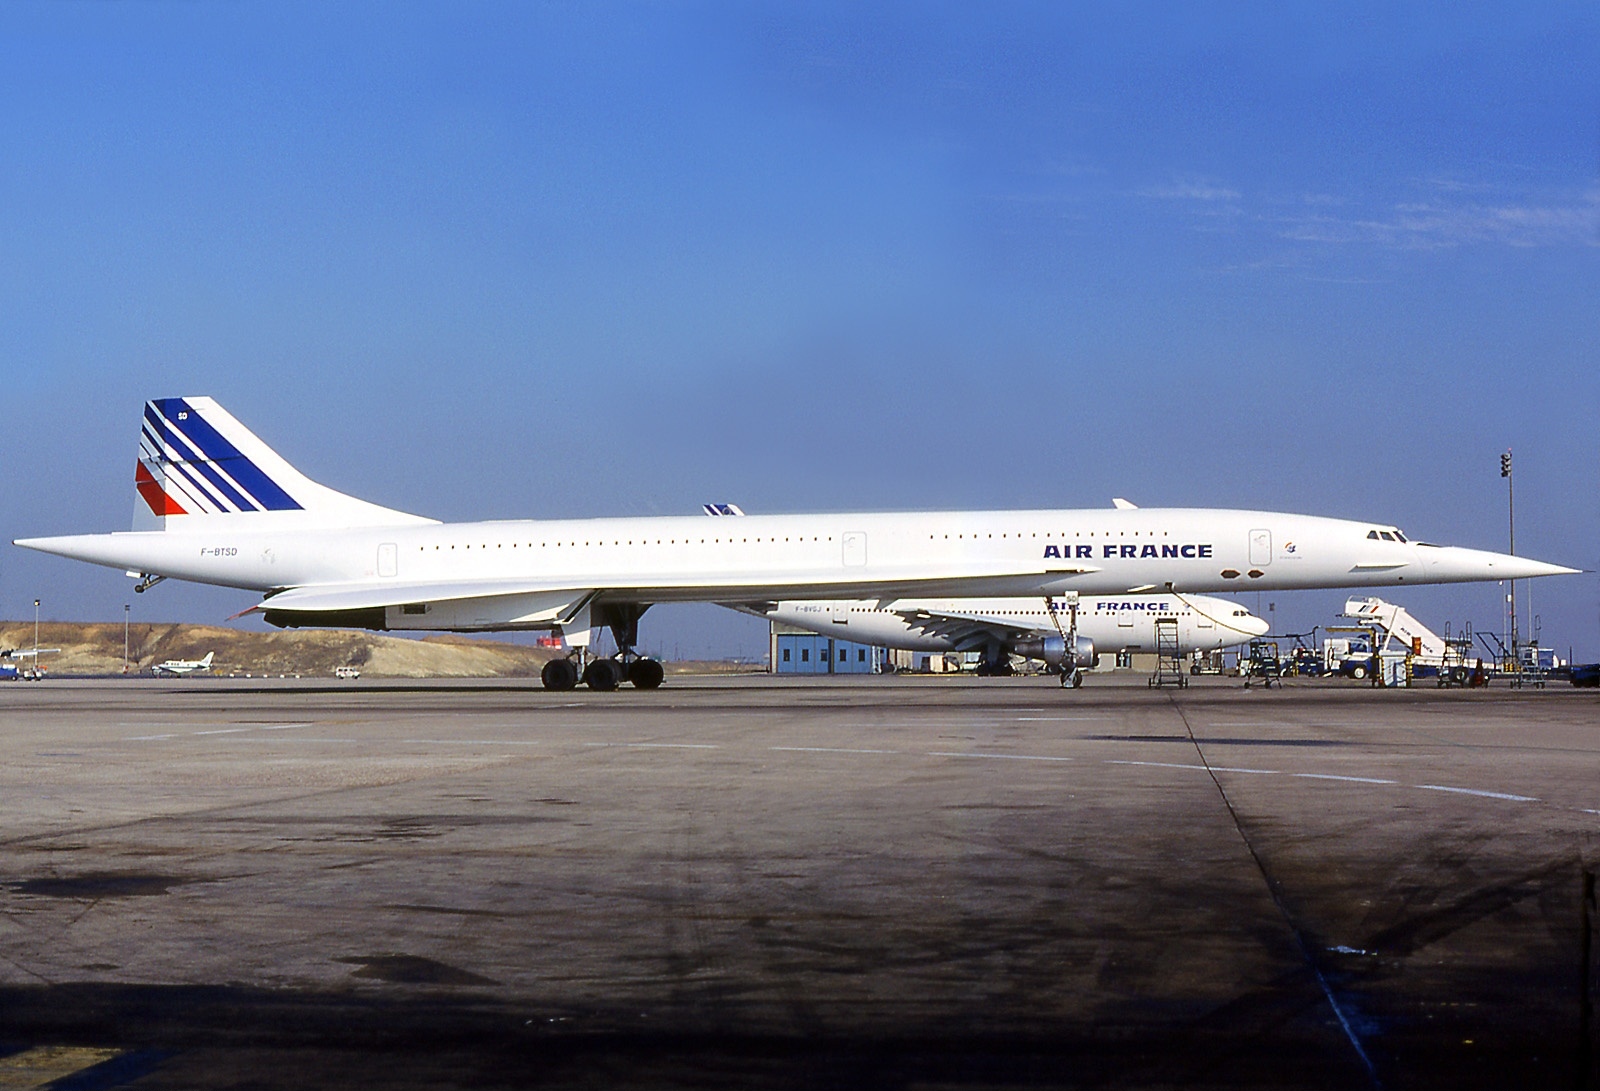 Aerospatiale-British Aerospace Concorde #6